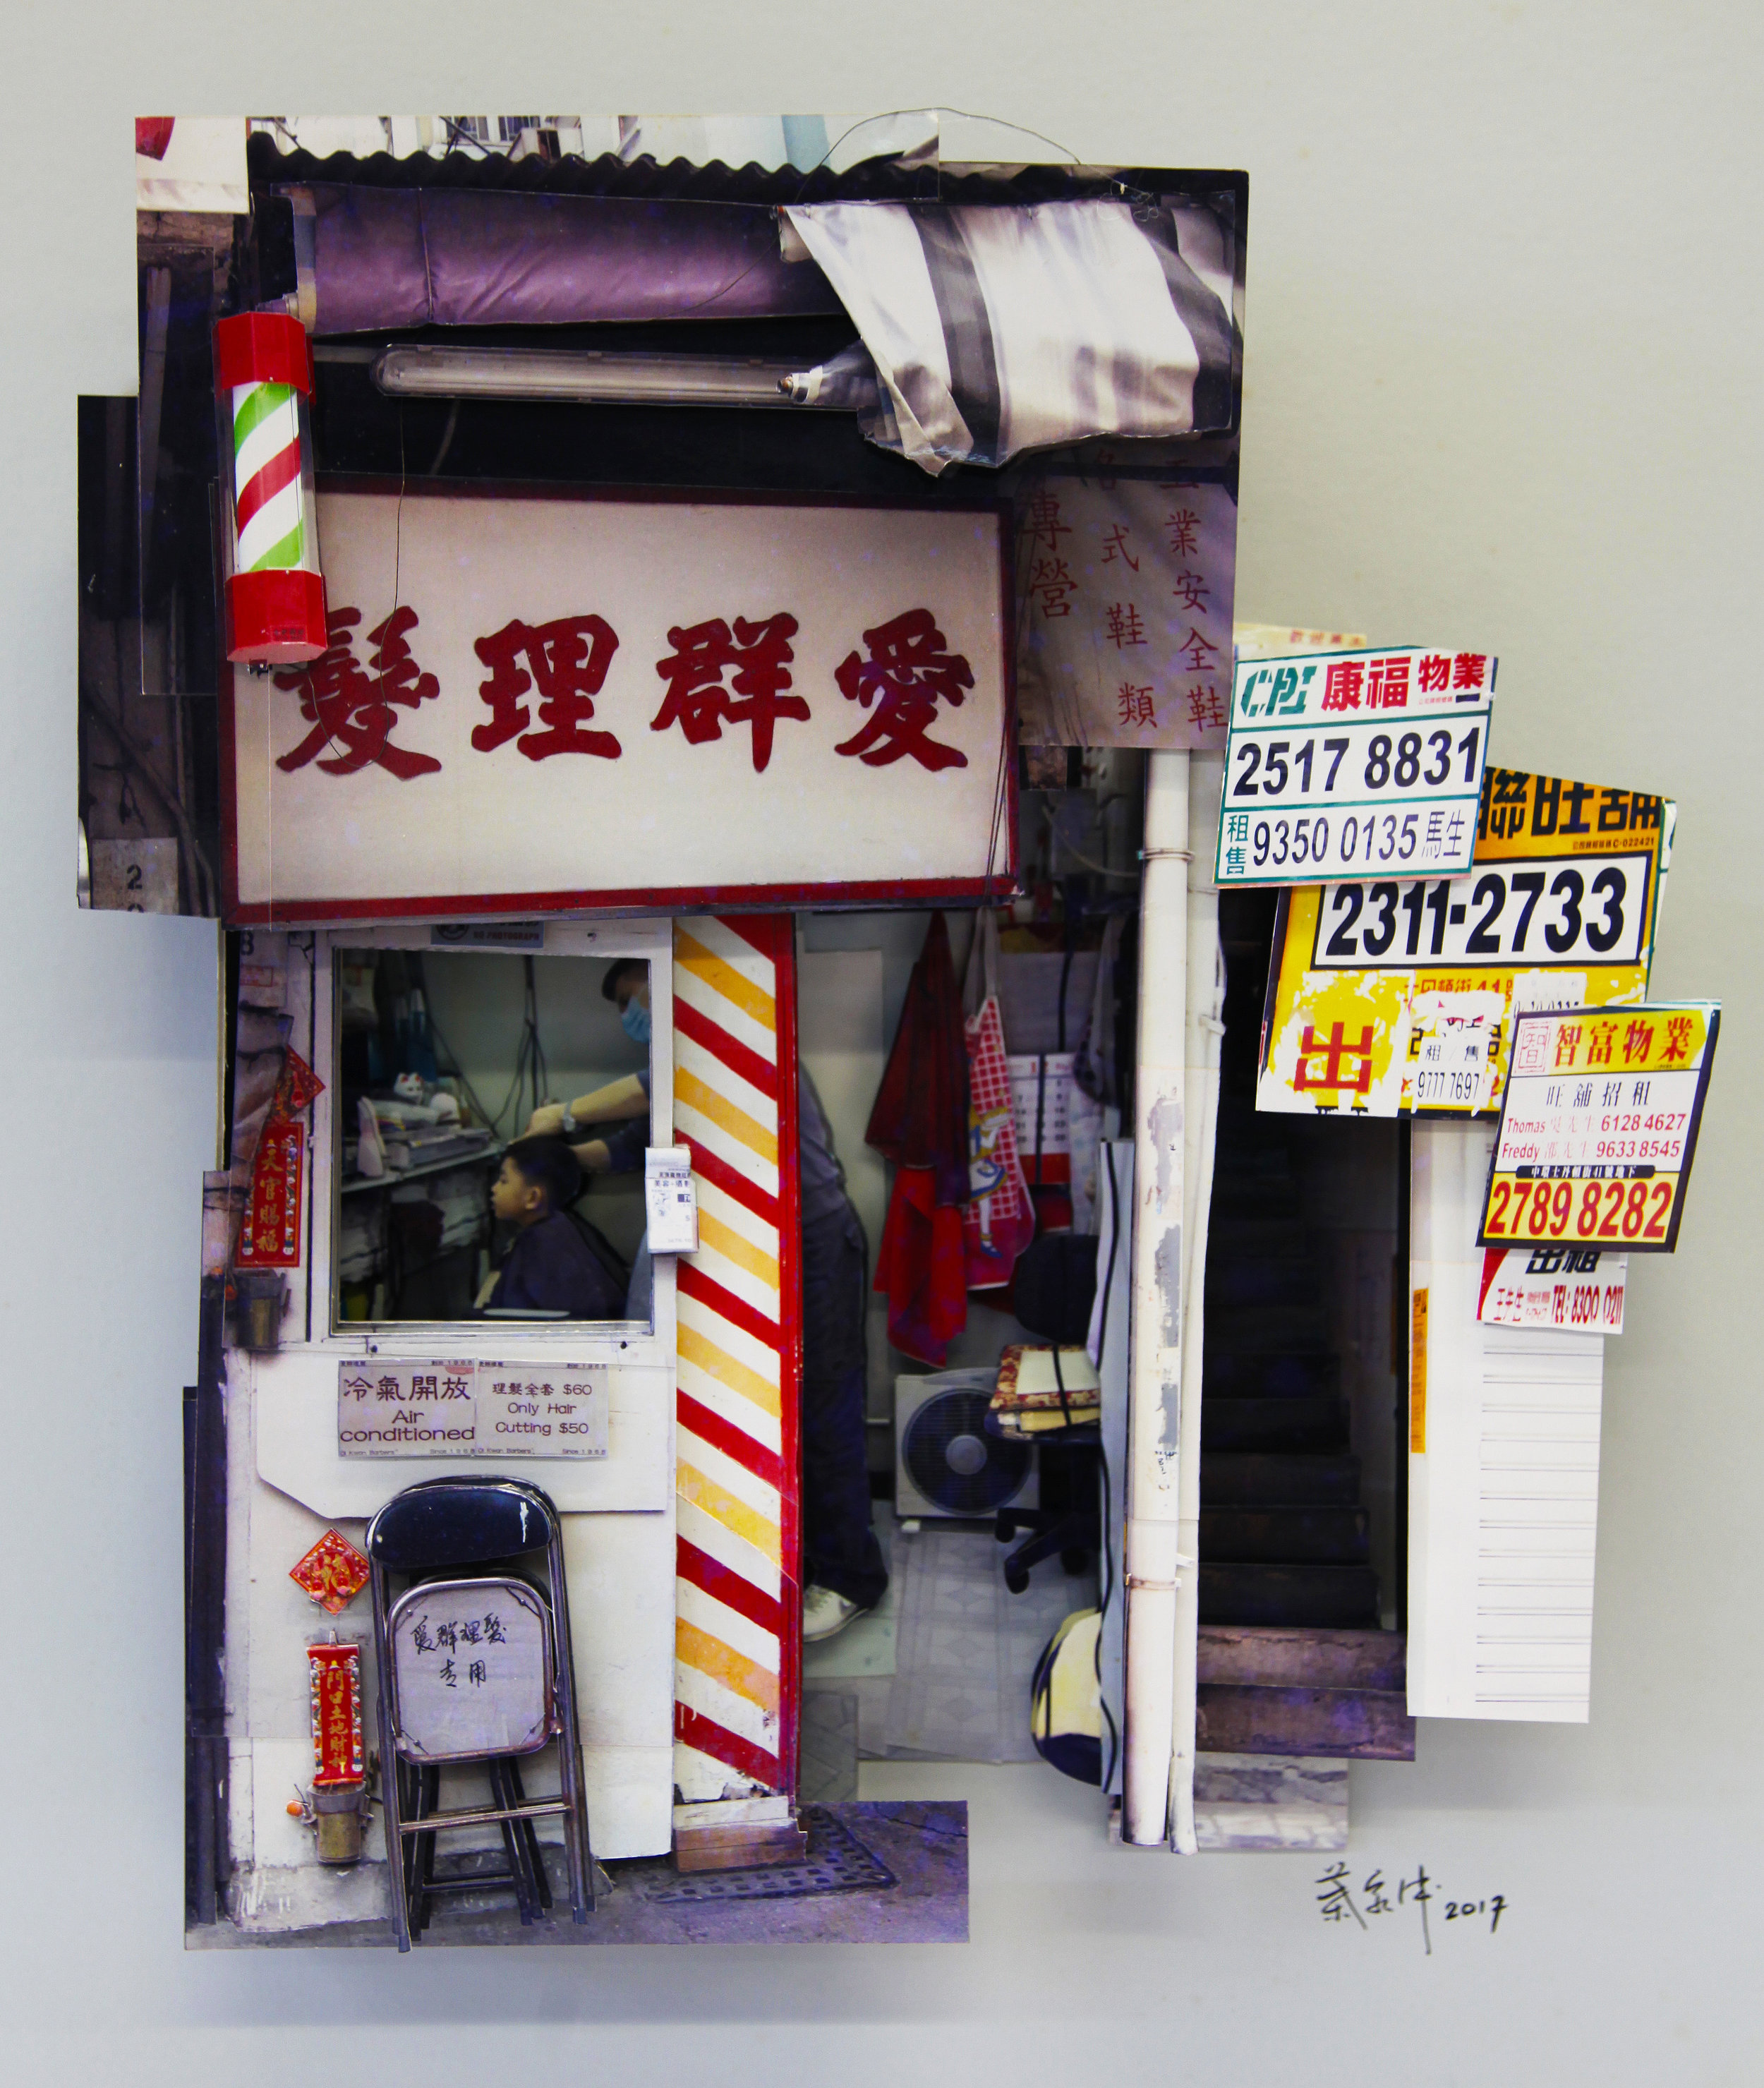 葉家偉 Alexis Ip '愛群理髮 Oi Kwan Barber Shop in Wan Chai' (Hong Kong, 2016) Courtesy of Blue Lotus Gallery.jpg